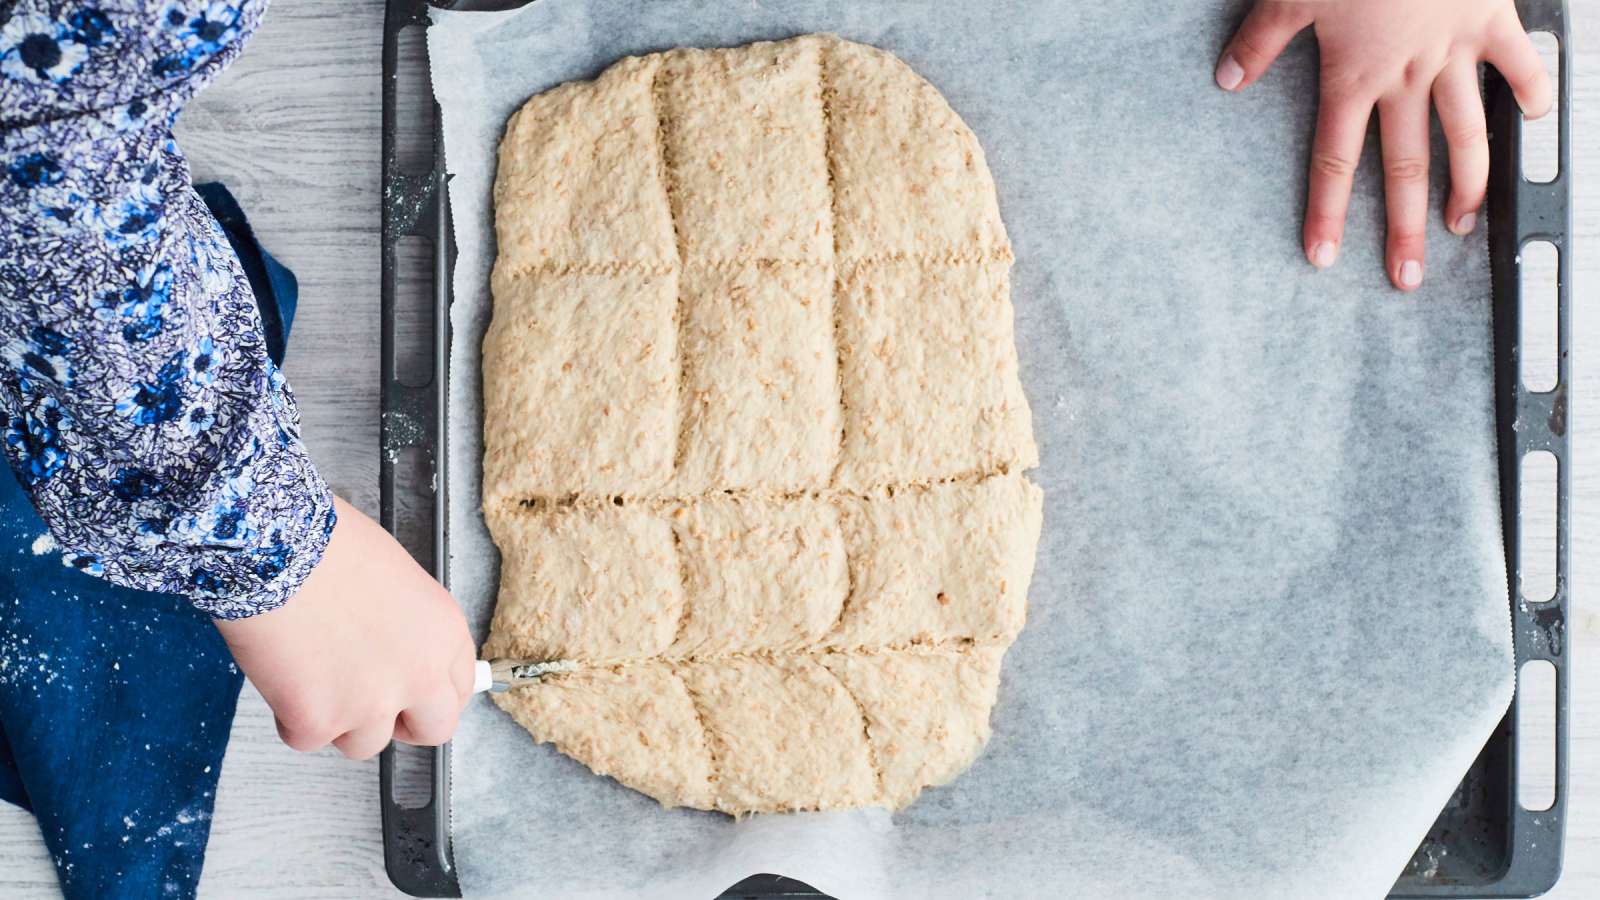 Ota pelti uunista ja naputa varovasti sormella kuuman leivän pintaa. Jos se tuntuu kovalta, leipä on valmis. Jos leivän pinta on pehmeä, laita se 2–3 minuutiksi takaisin uuniin. Anna leivän jäähtyä pellillä.